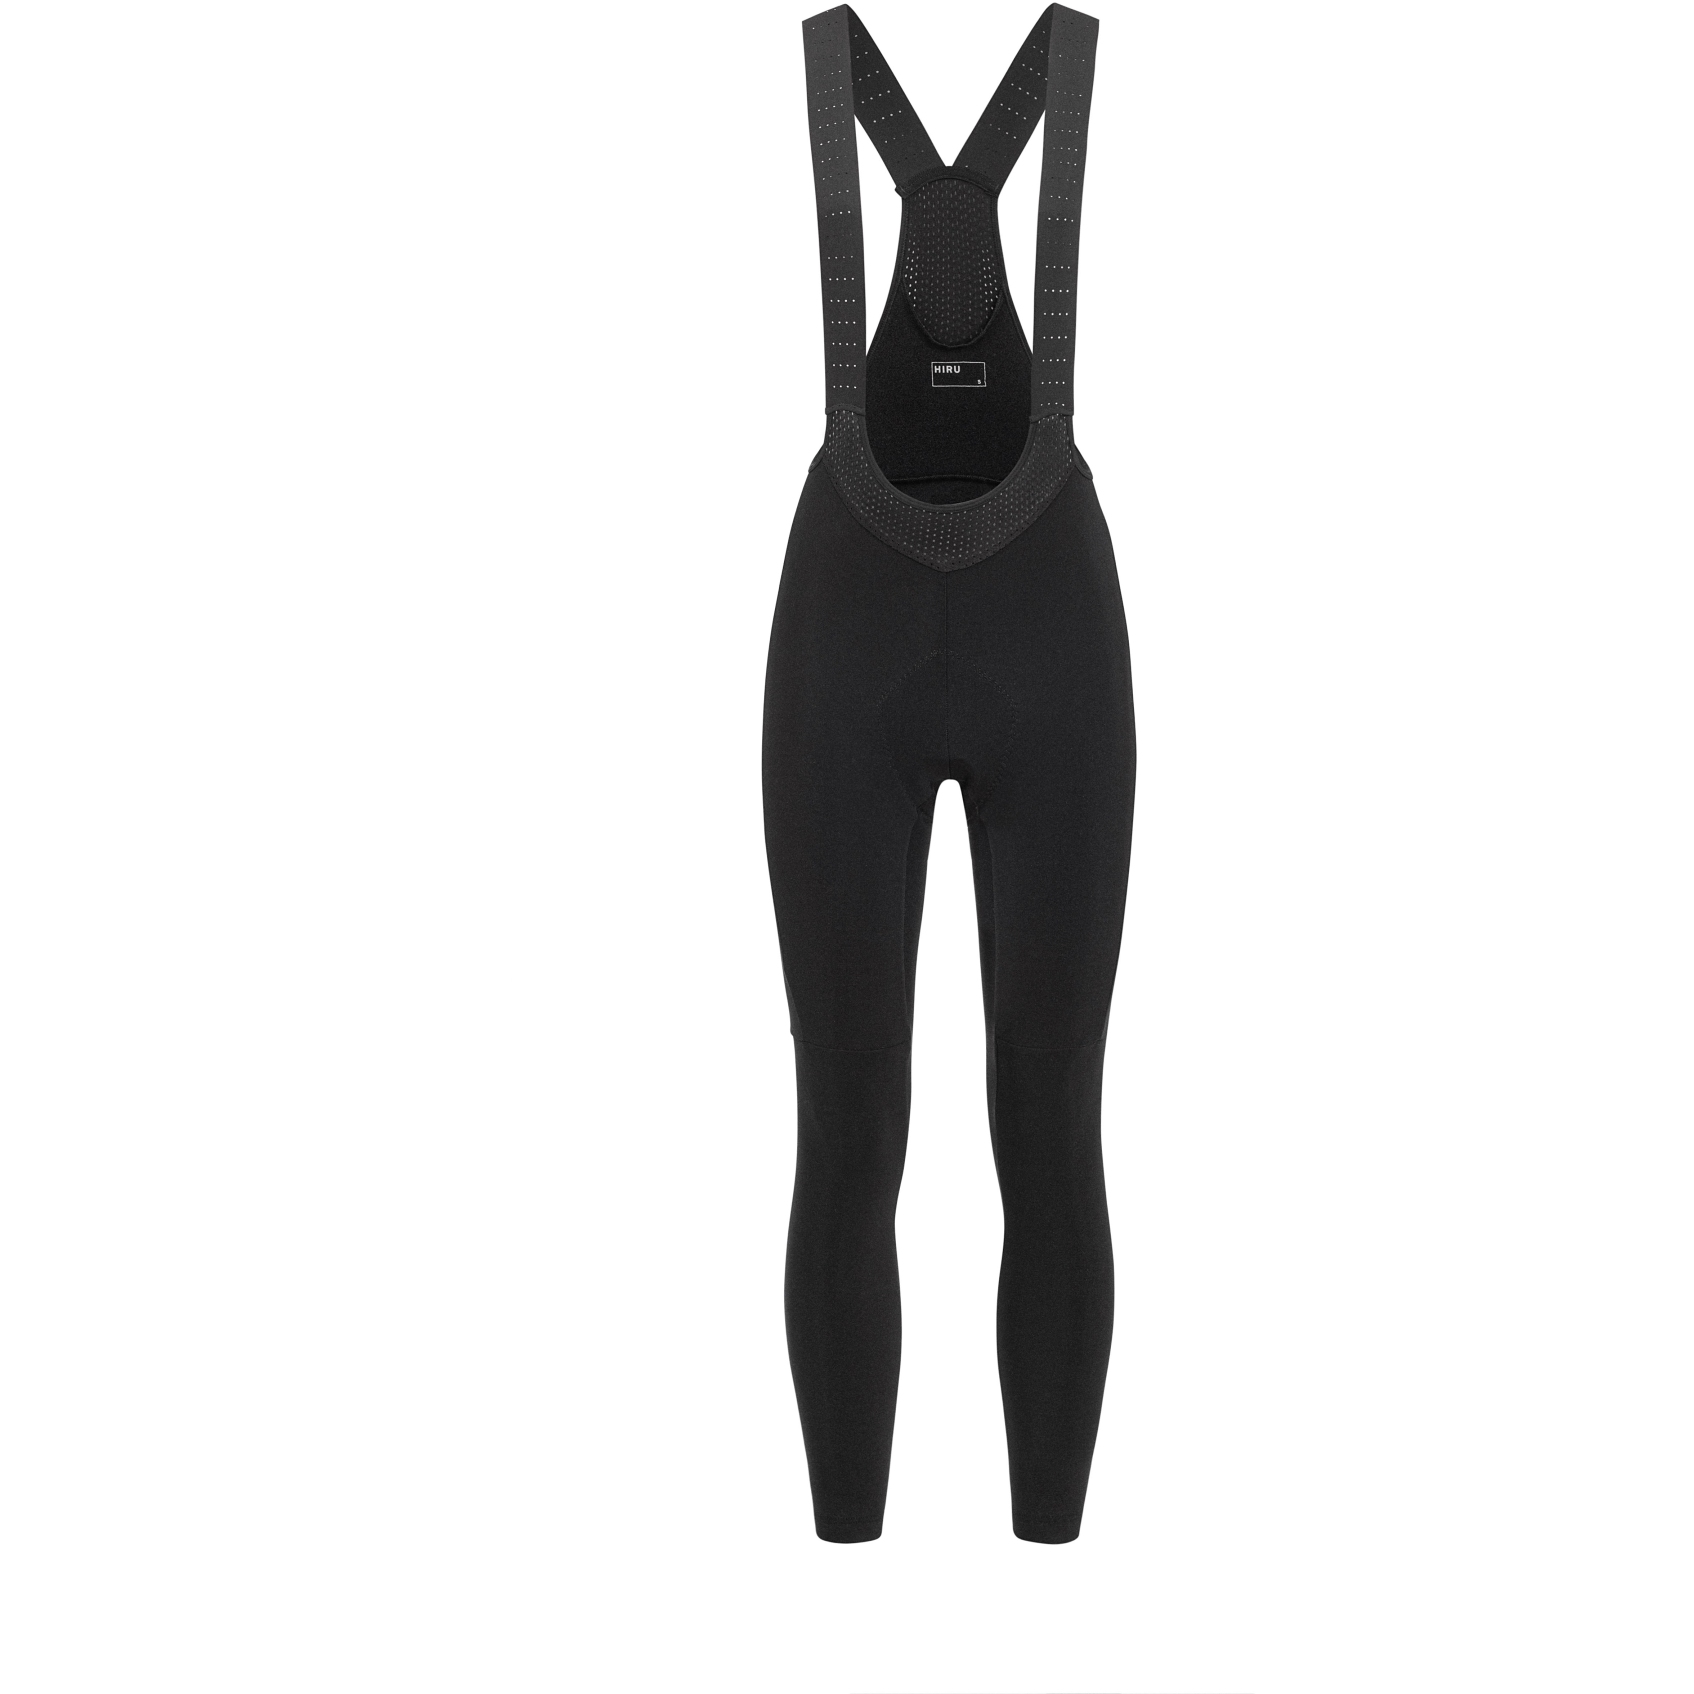 Productfoto van Hiru Core Thermal Dames Fietsshort met Bretels - zwart